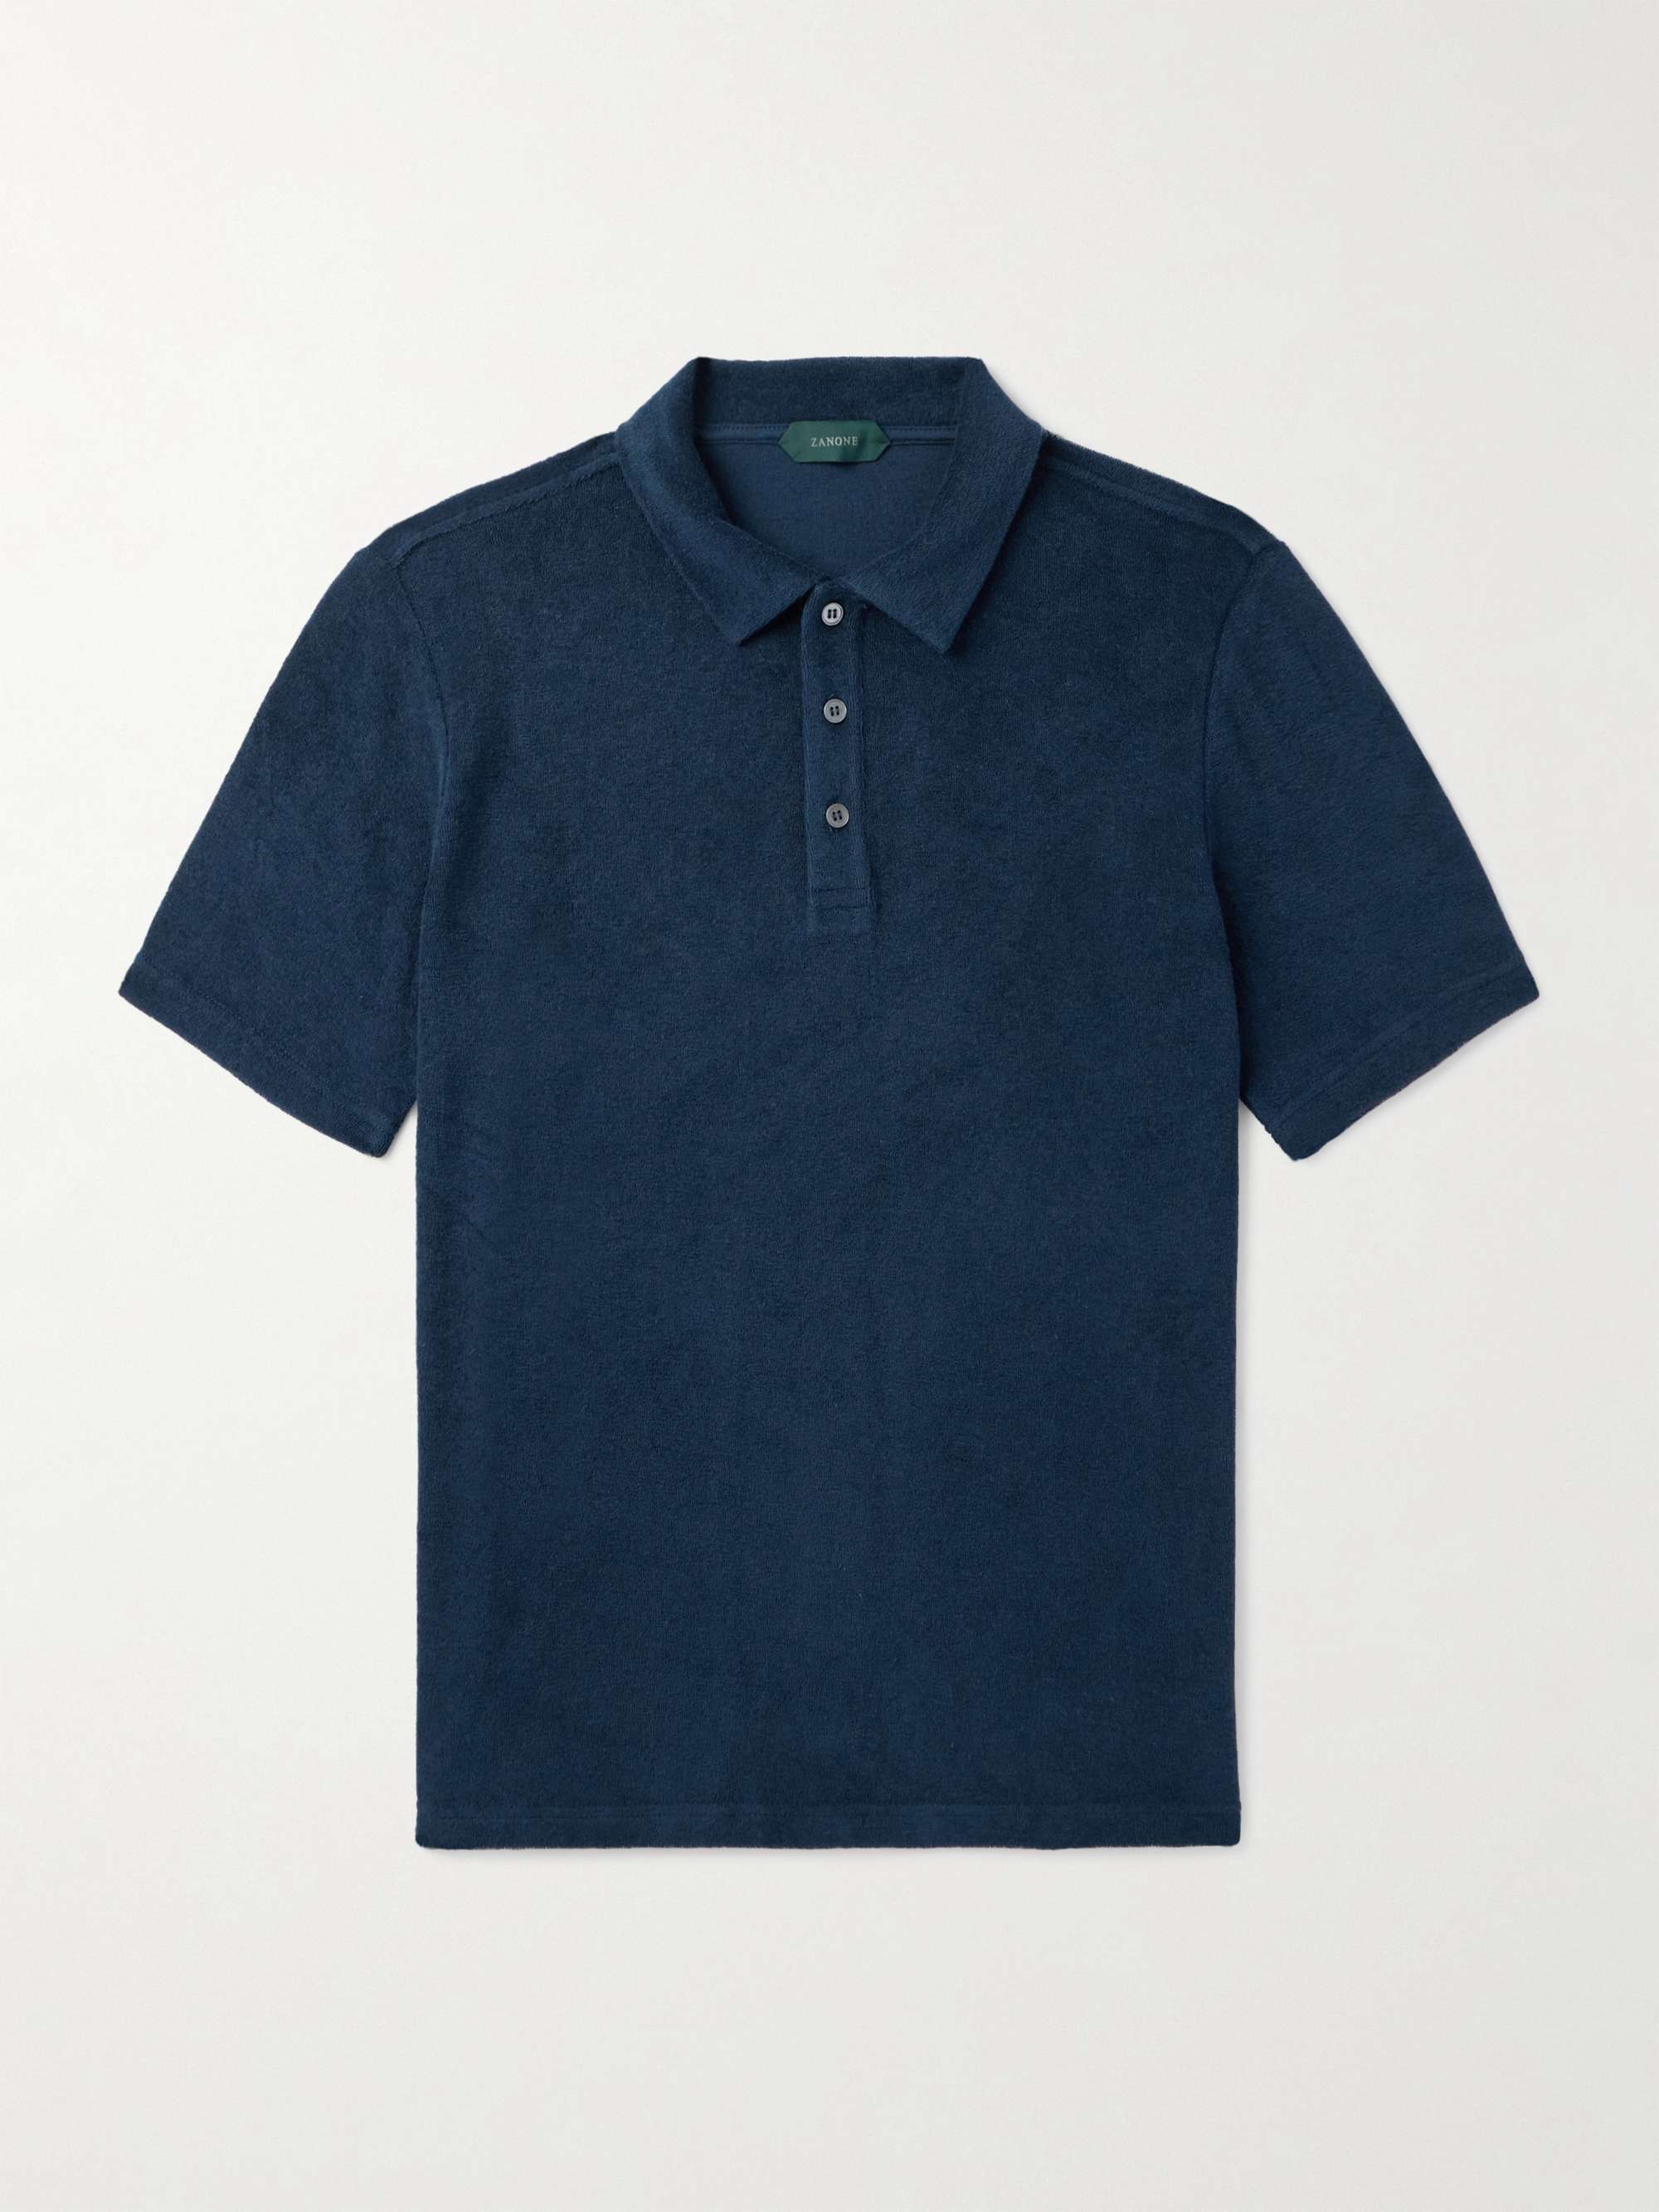 Terry Cloth Polo – Criquet Shirts